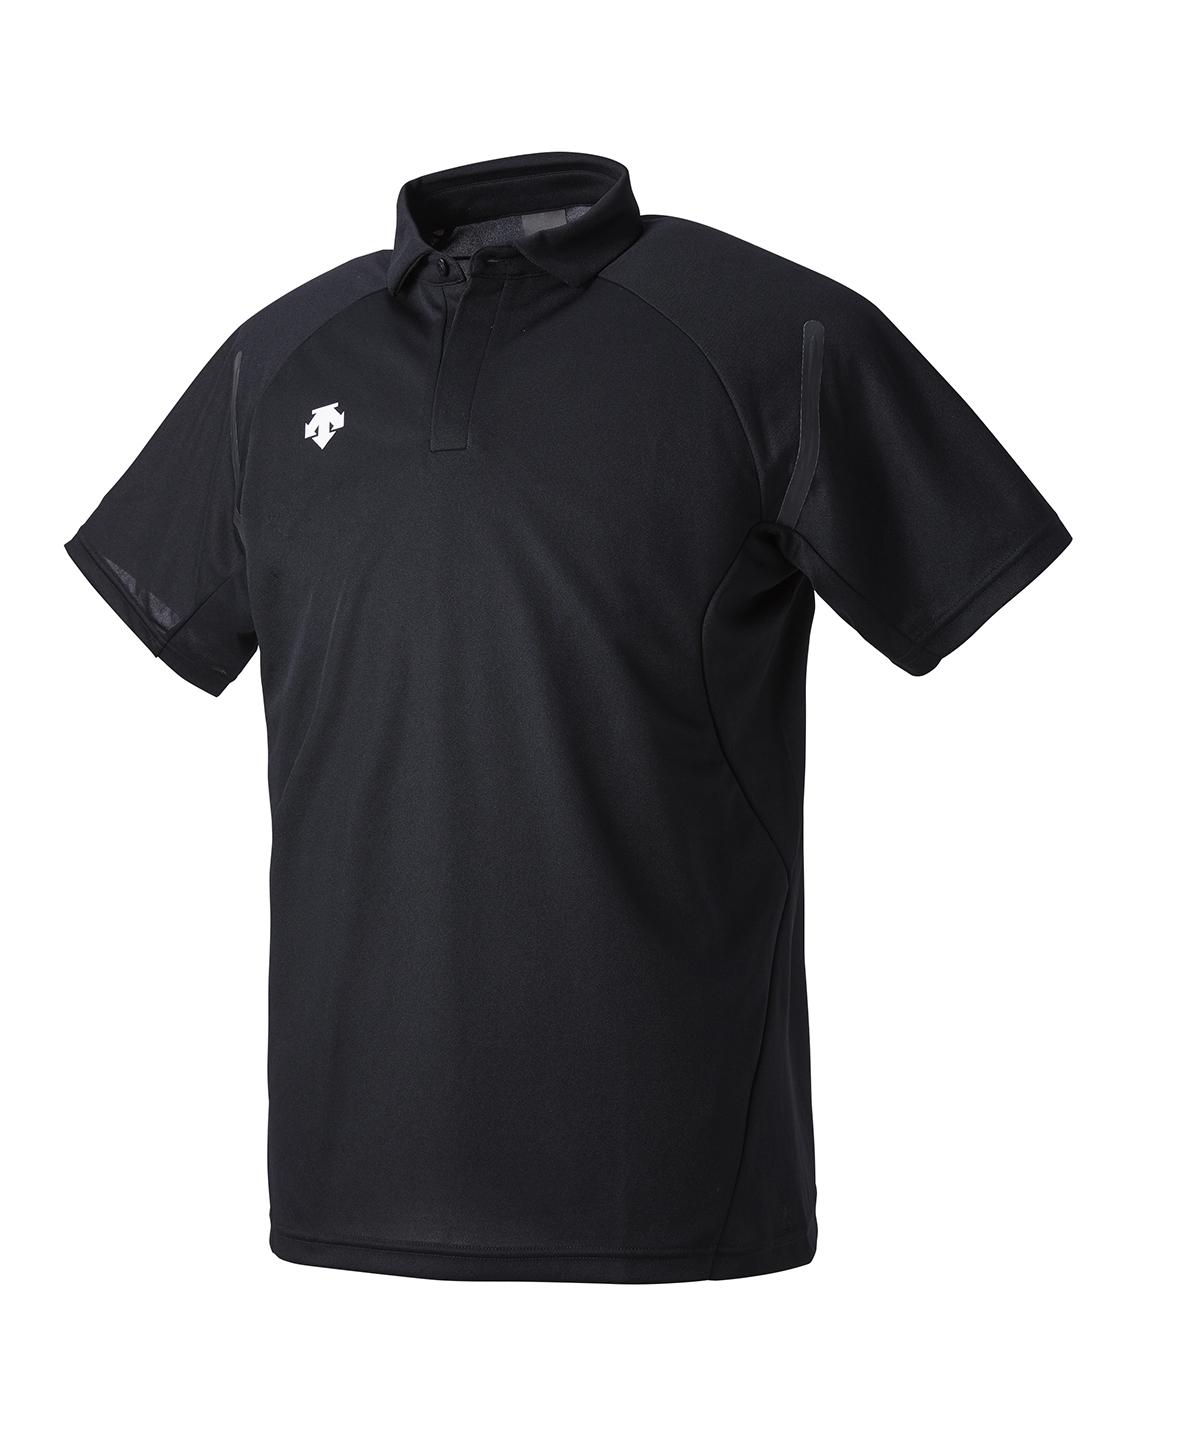  デサント ポロシャツ メンズ レディース ユニセックス ウェア シャツ ポロシャツ トレーニング スポーツ DTM-4000 2022年秋冬モデル